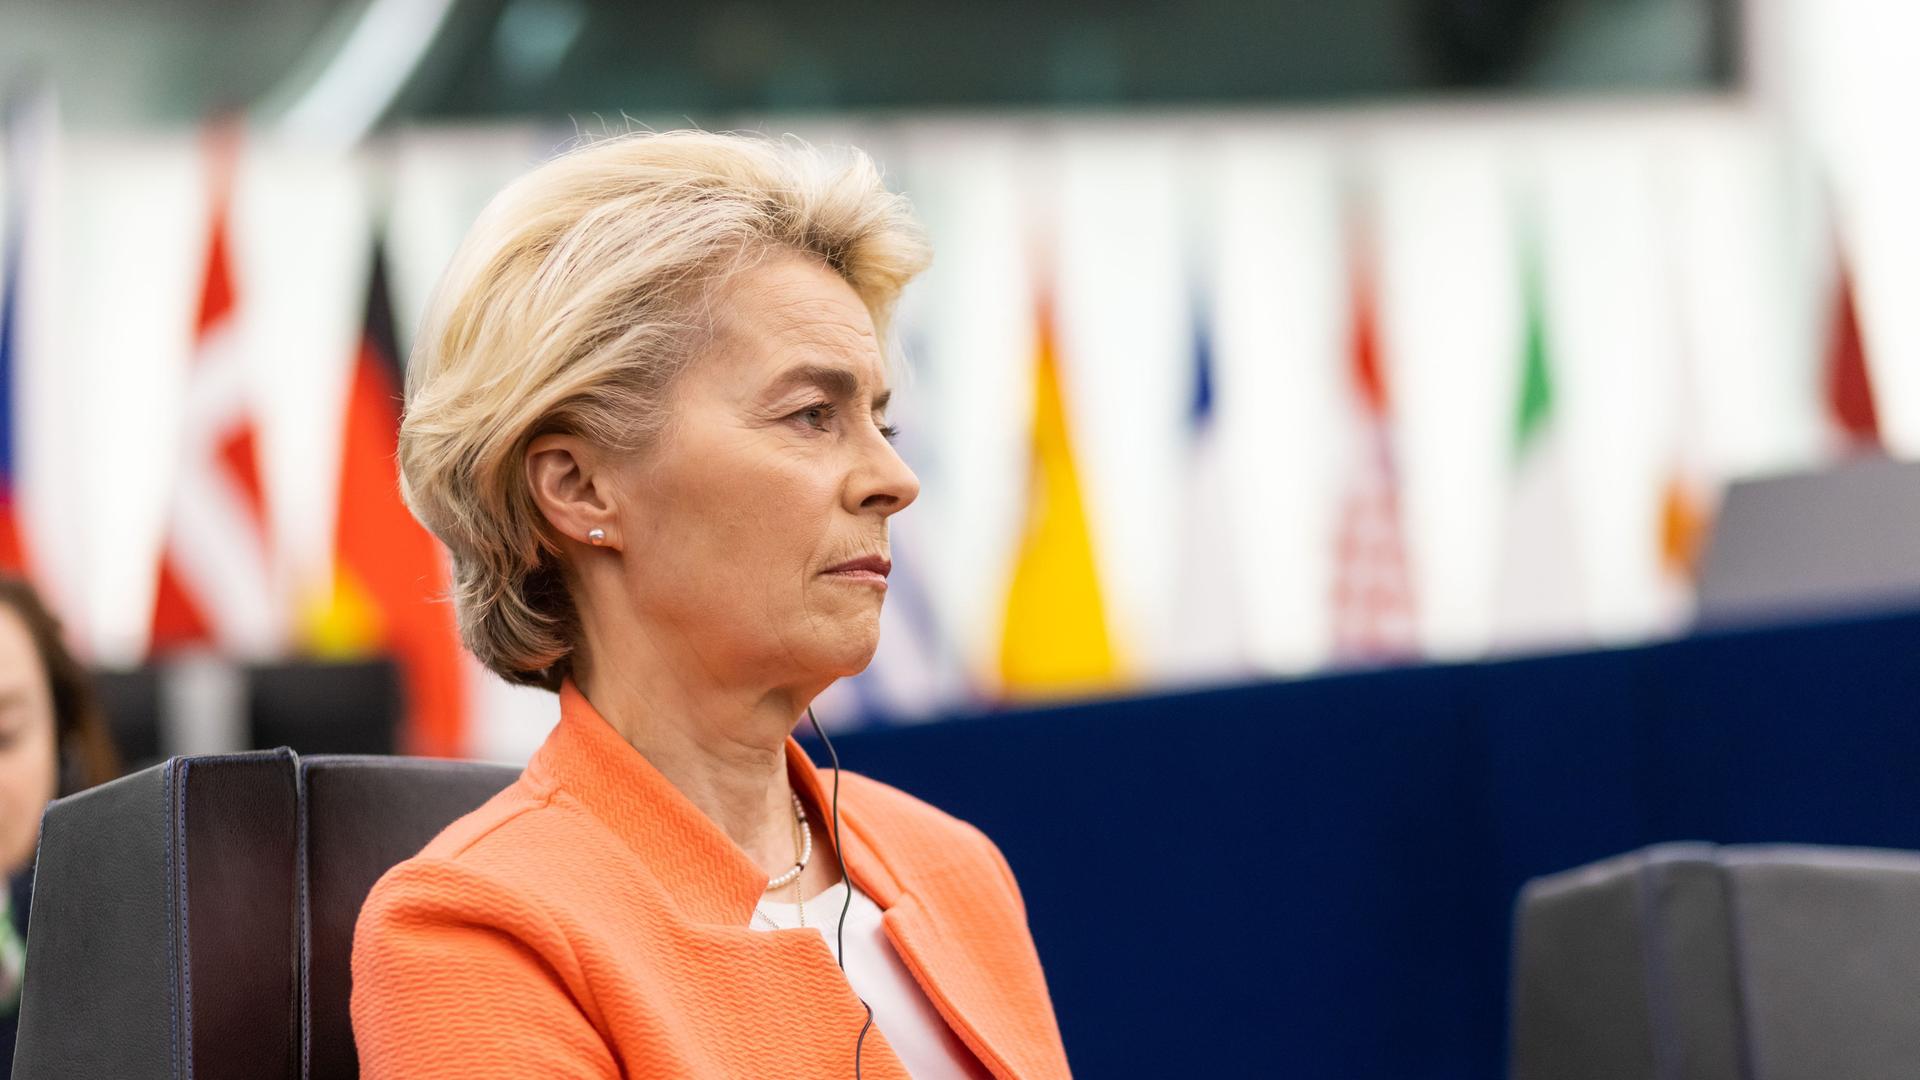 Ursula von der Leyen (CDU), Präsidentin der Europäischen Kommission, sitzt im Gebäude des Europäischen Parlaments.